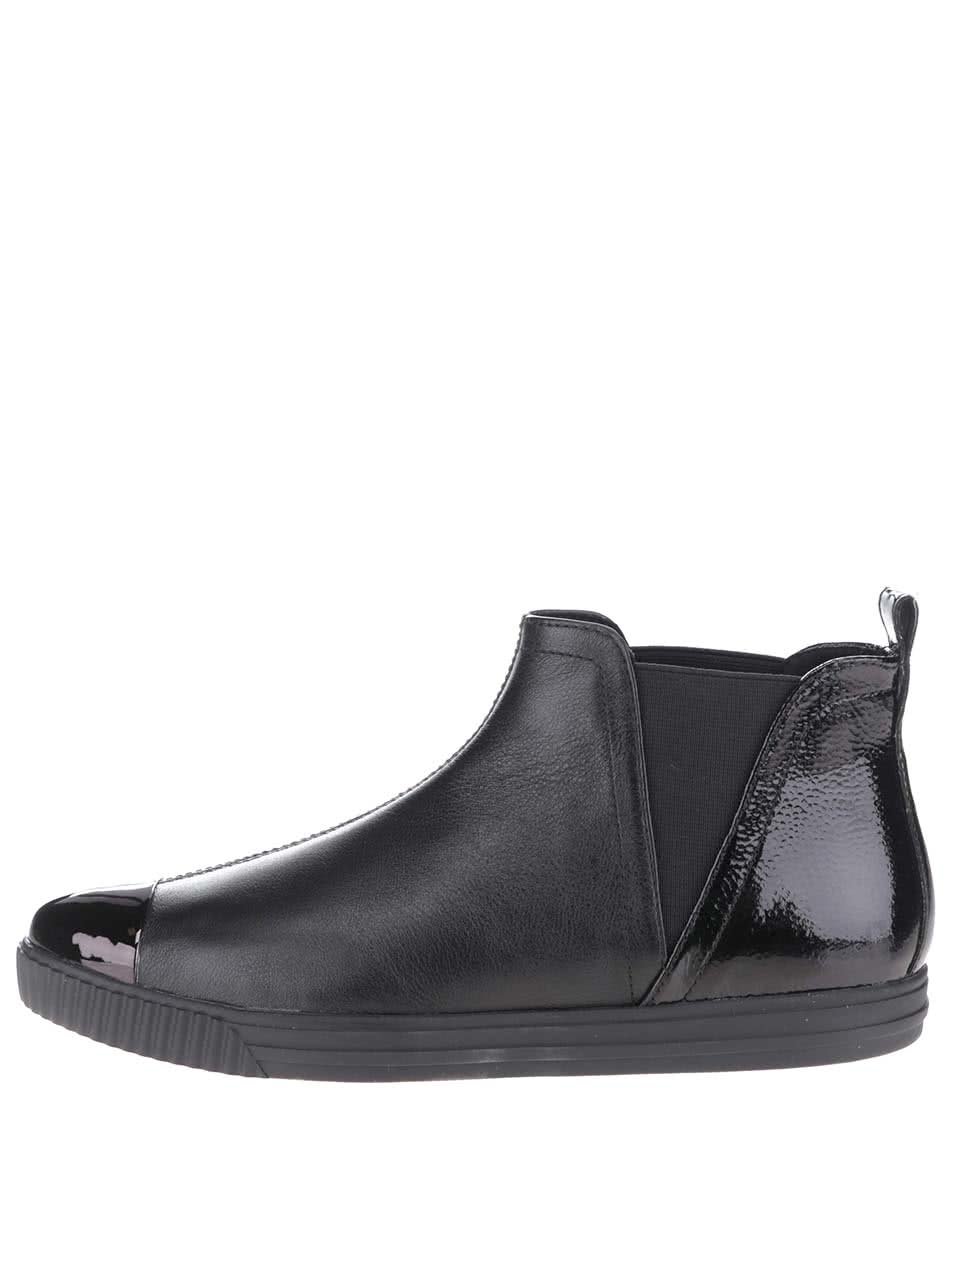 Černé dámské kožené kotníkové boty s lesklou špičkou Geox Amalthia